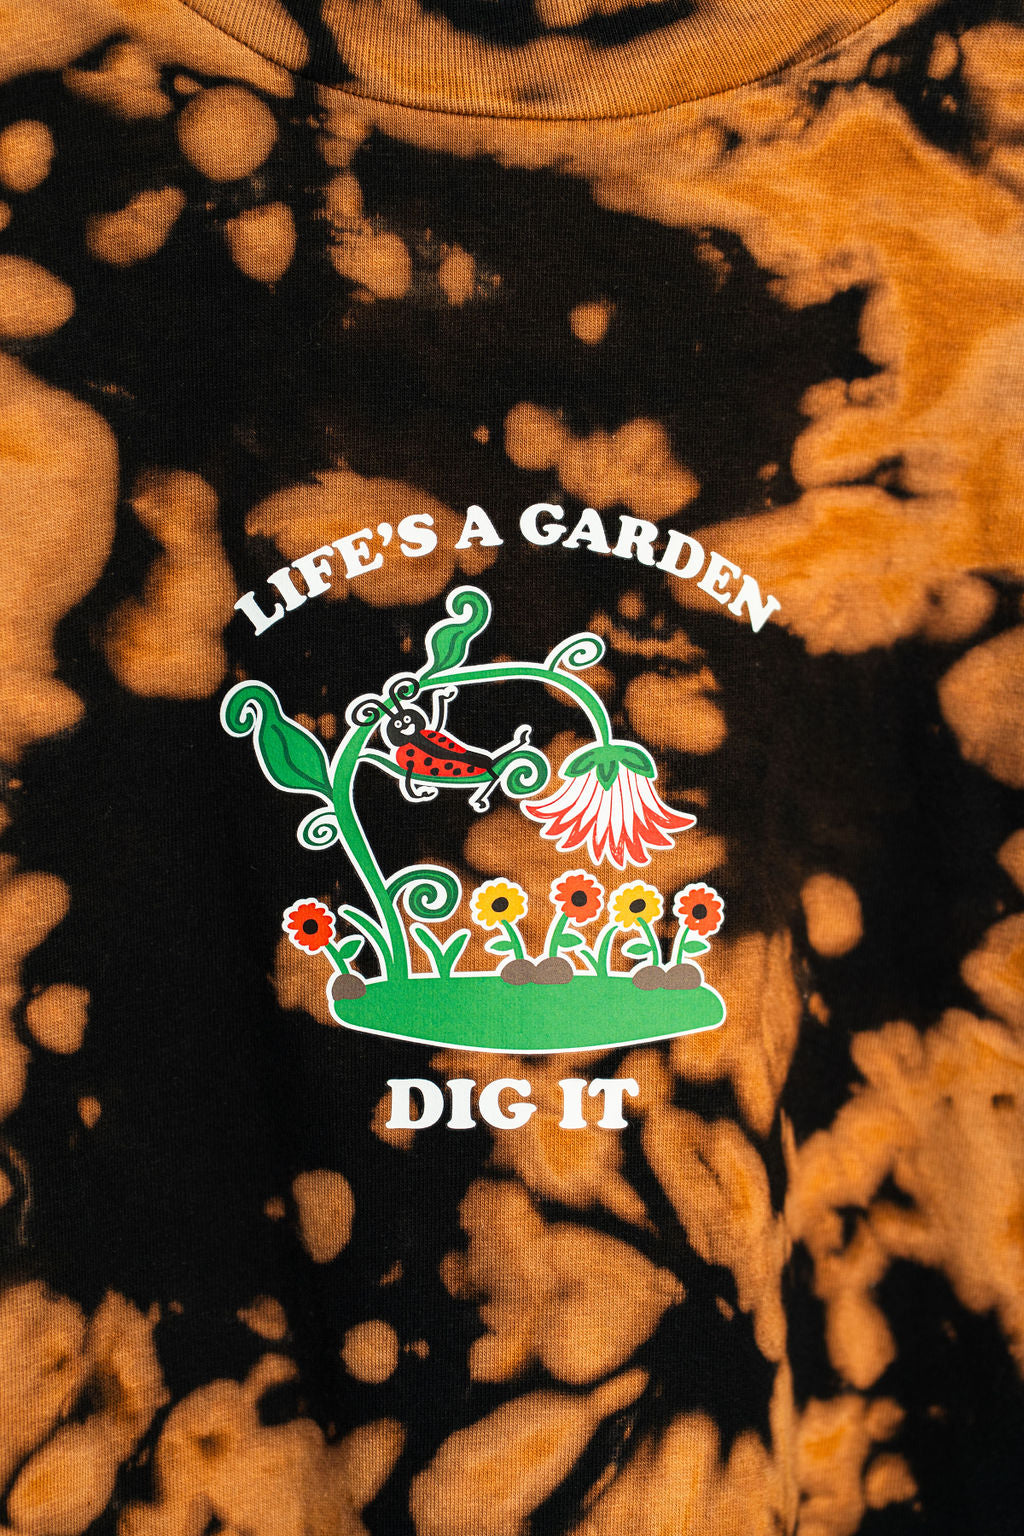 Life's A Garden - Dig It! Bleach Dye Shirt